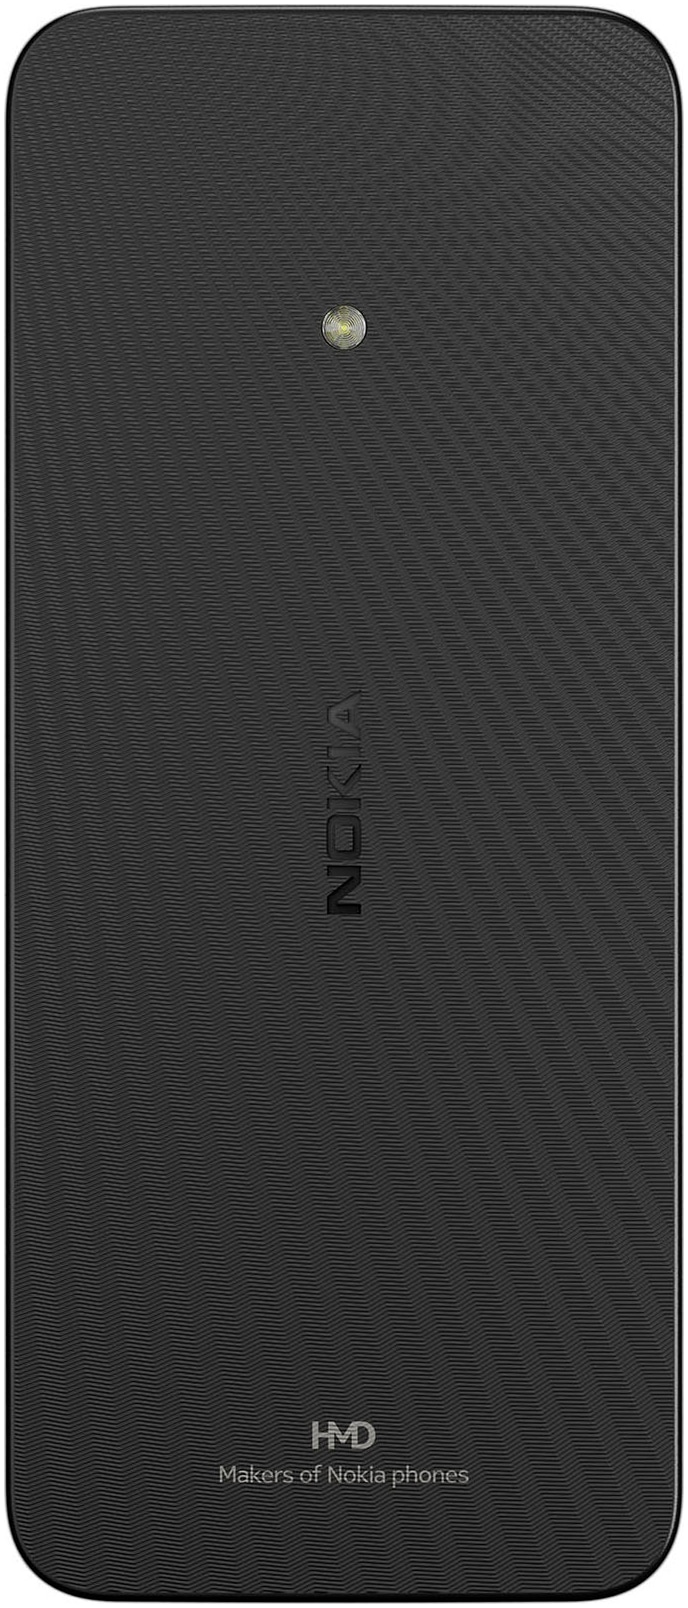 Nokia Handy »215 4G«, black, 7,11 cm/2,8 Zoll, 0,12 GB Speicherplatz